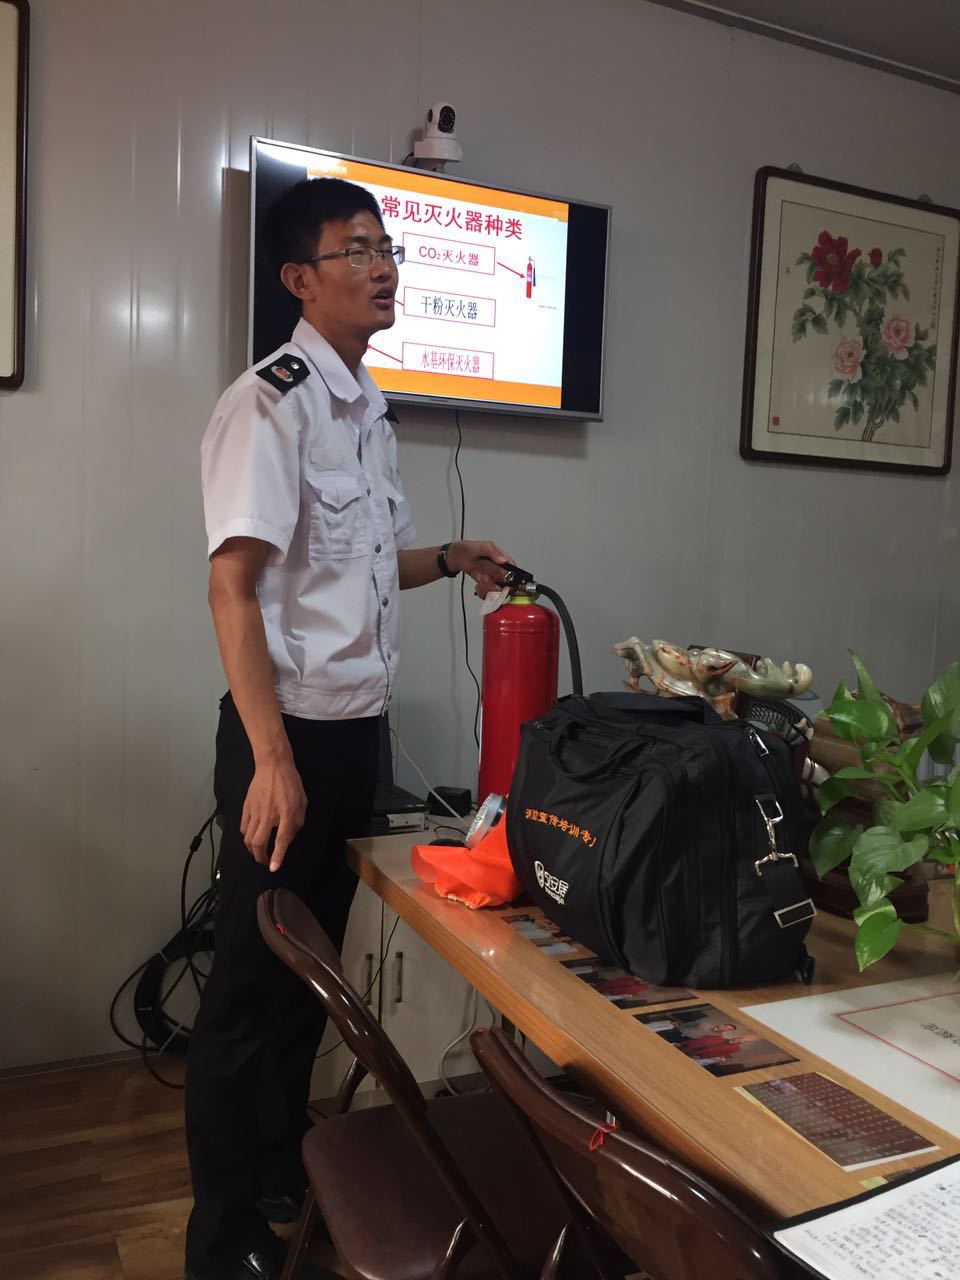 天津天辰物流有限公司舉行消防普及教育活動